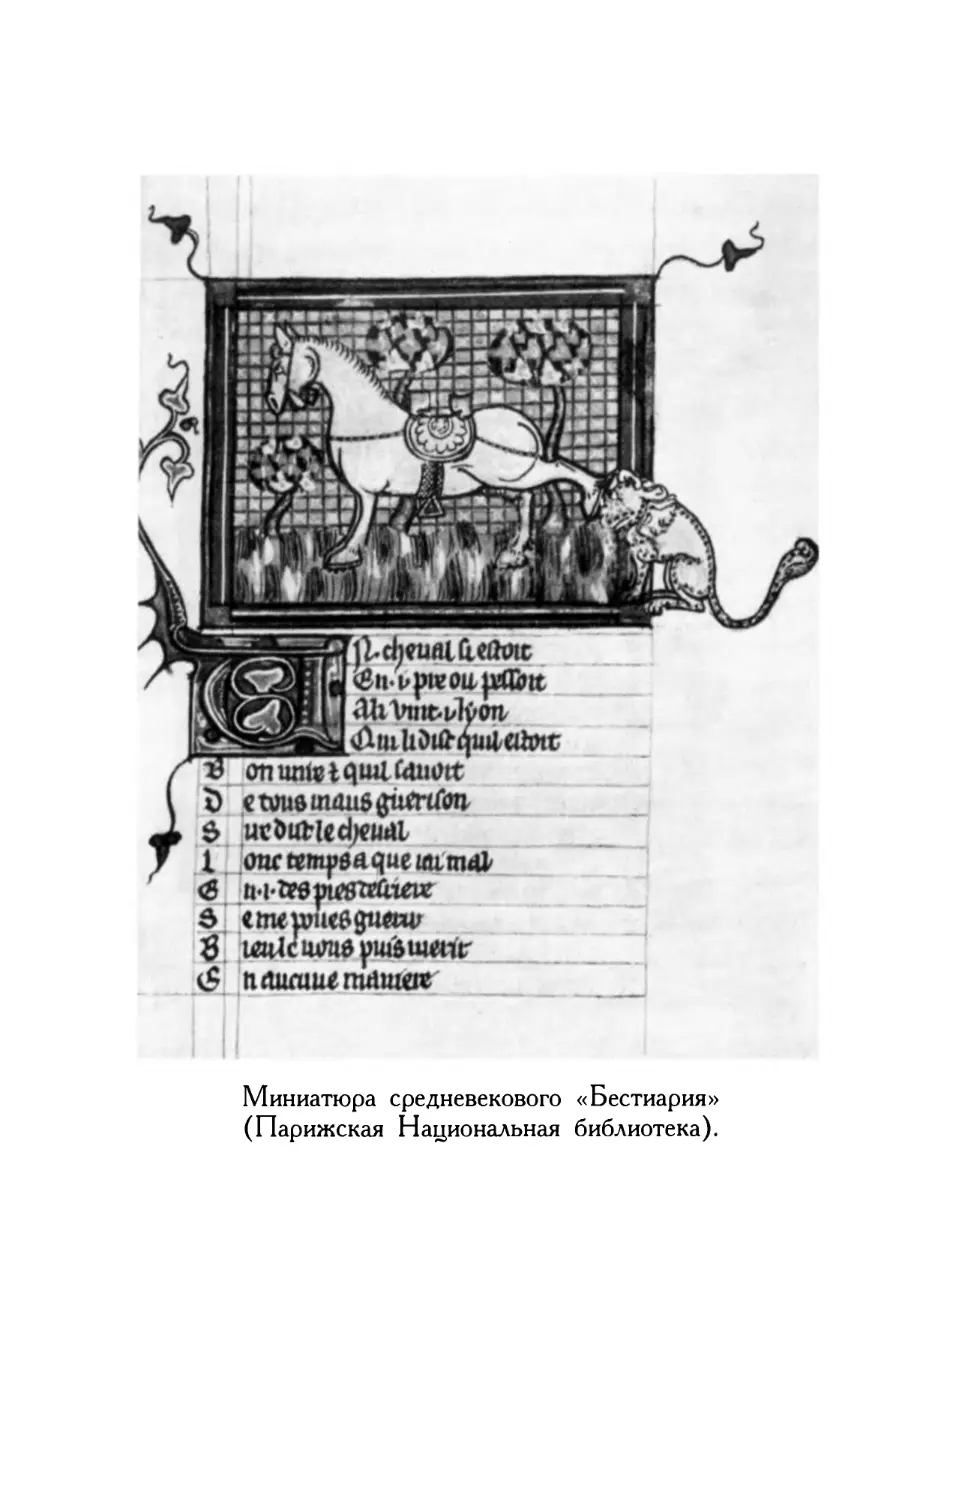 Миниатюра средневекового «Бестиария»